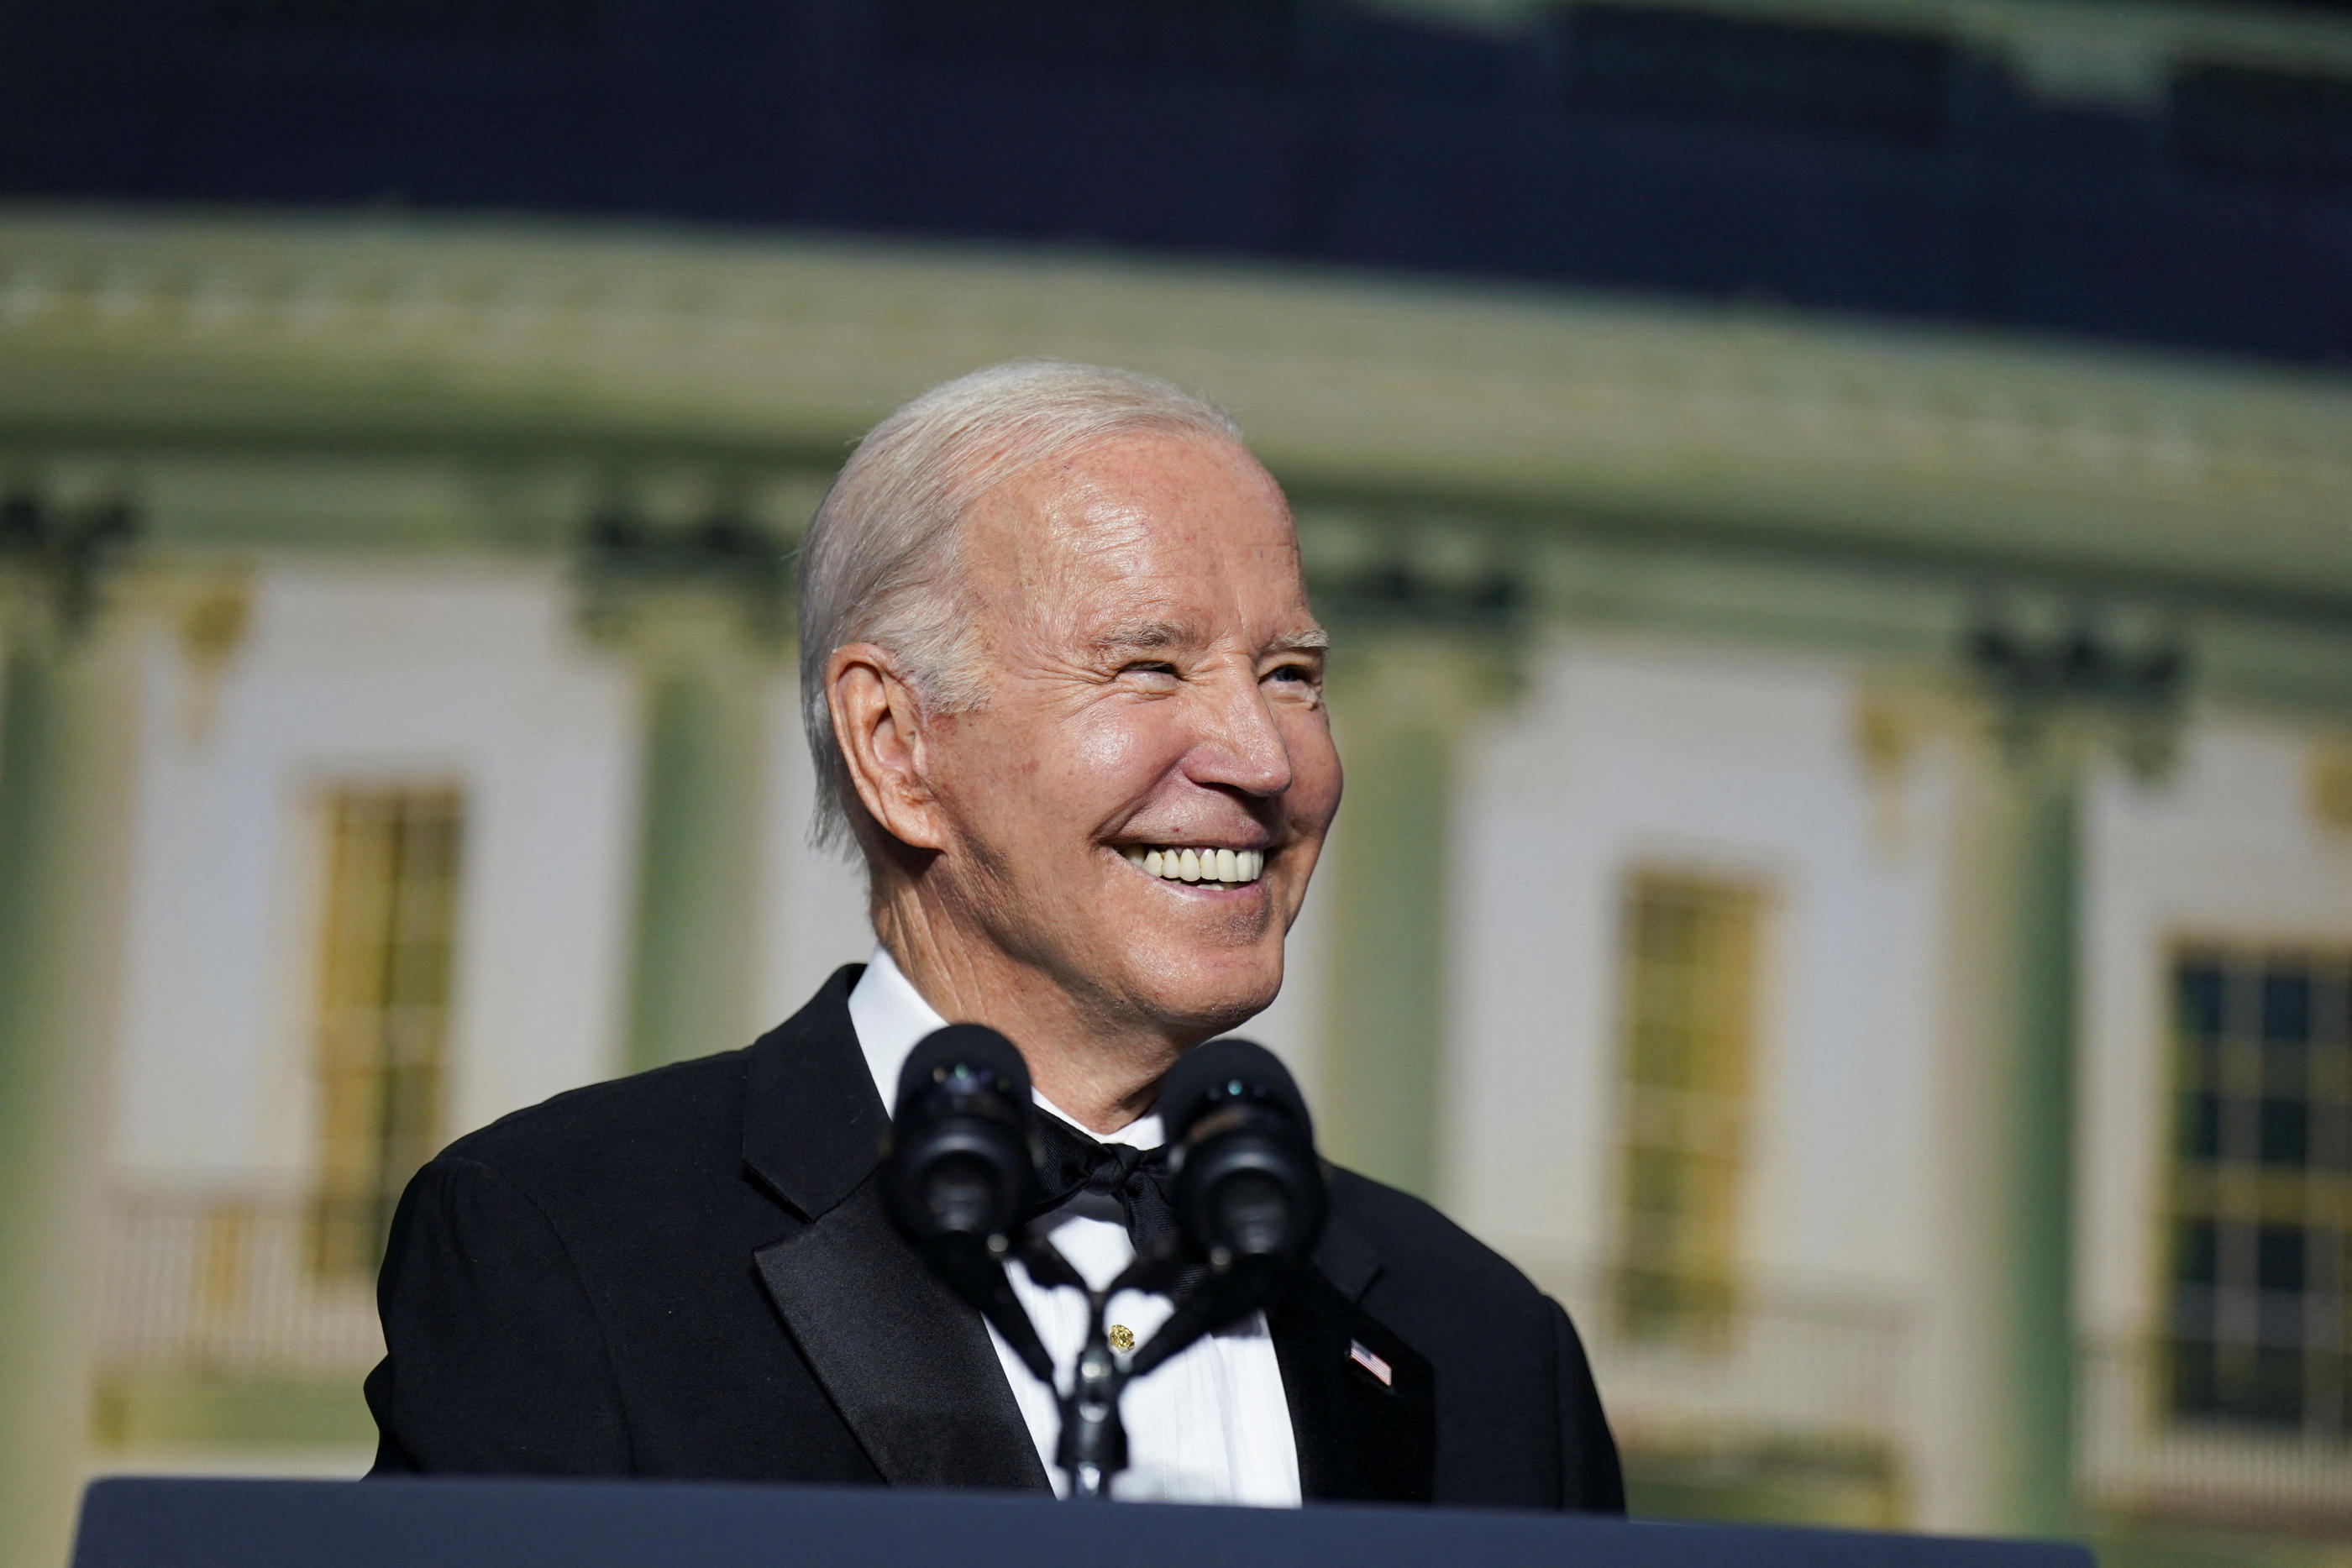 Joe Biden, sourire aux lèvres, lors du traditionnel dîner des correspondants de la Maison Blanche. REUTERS/Al Drago